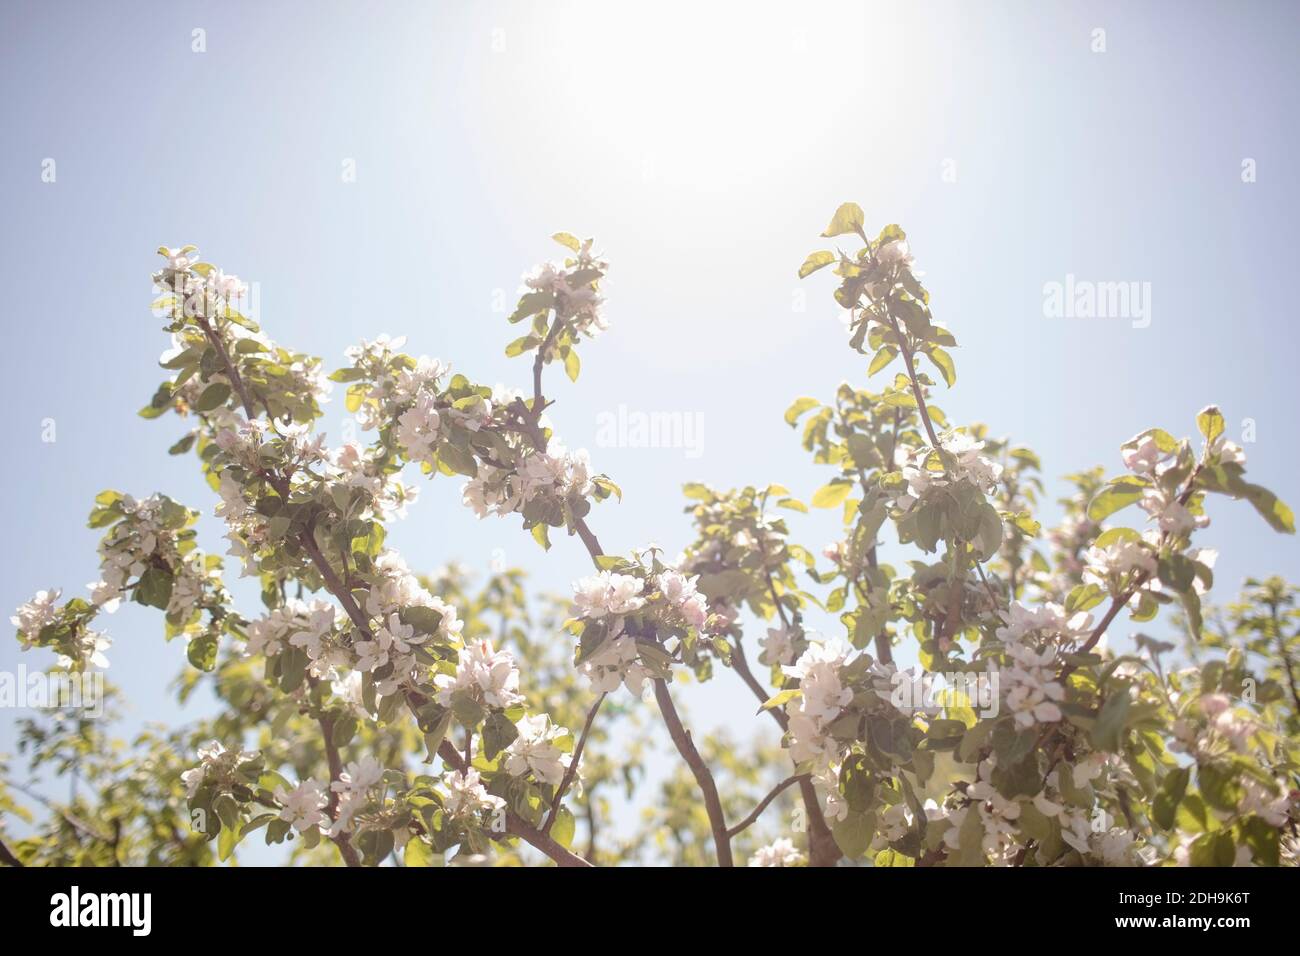 Vista en ángulo bajo de las ramas floridas contra el cielo despejado durante día soleado Foto de stock